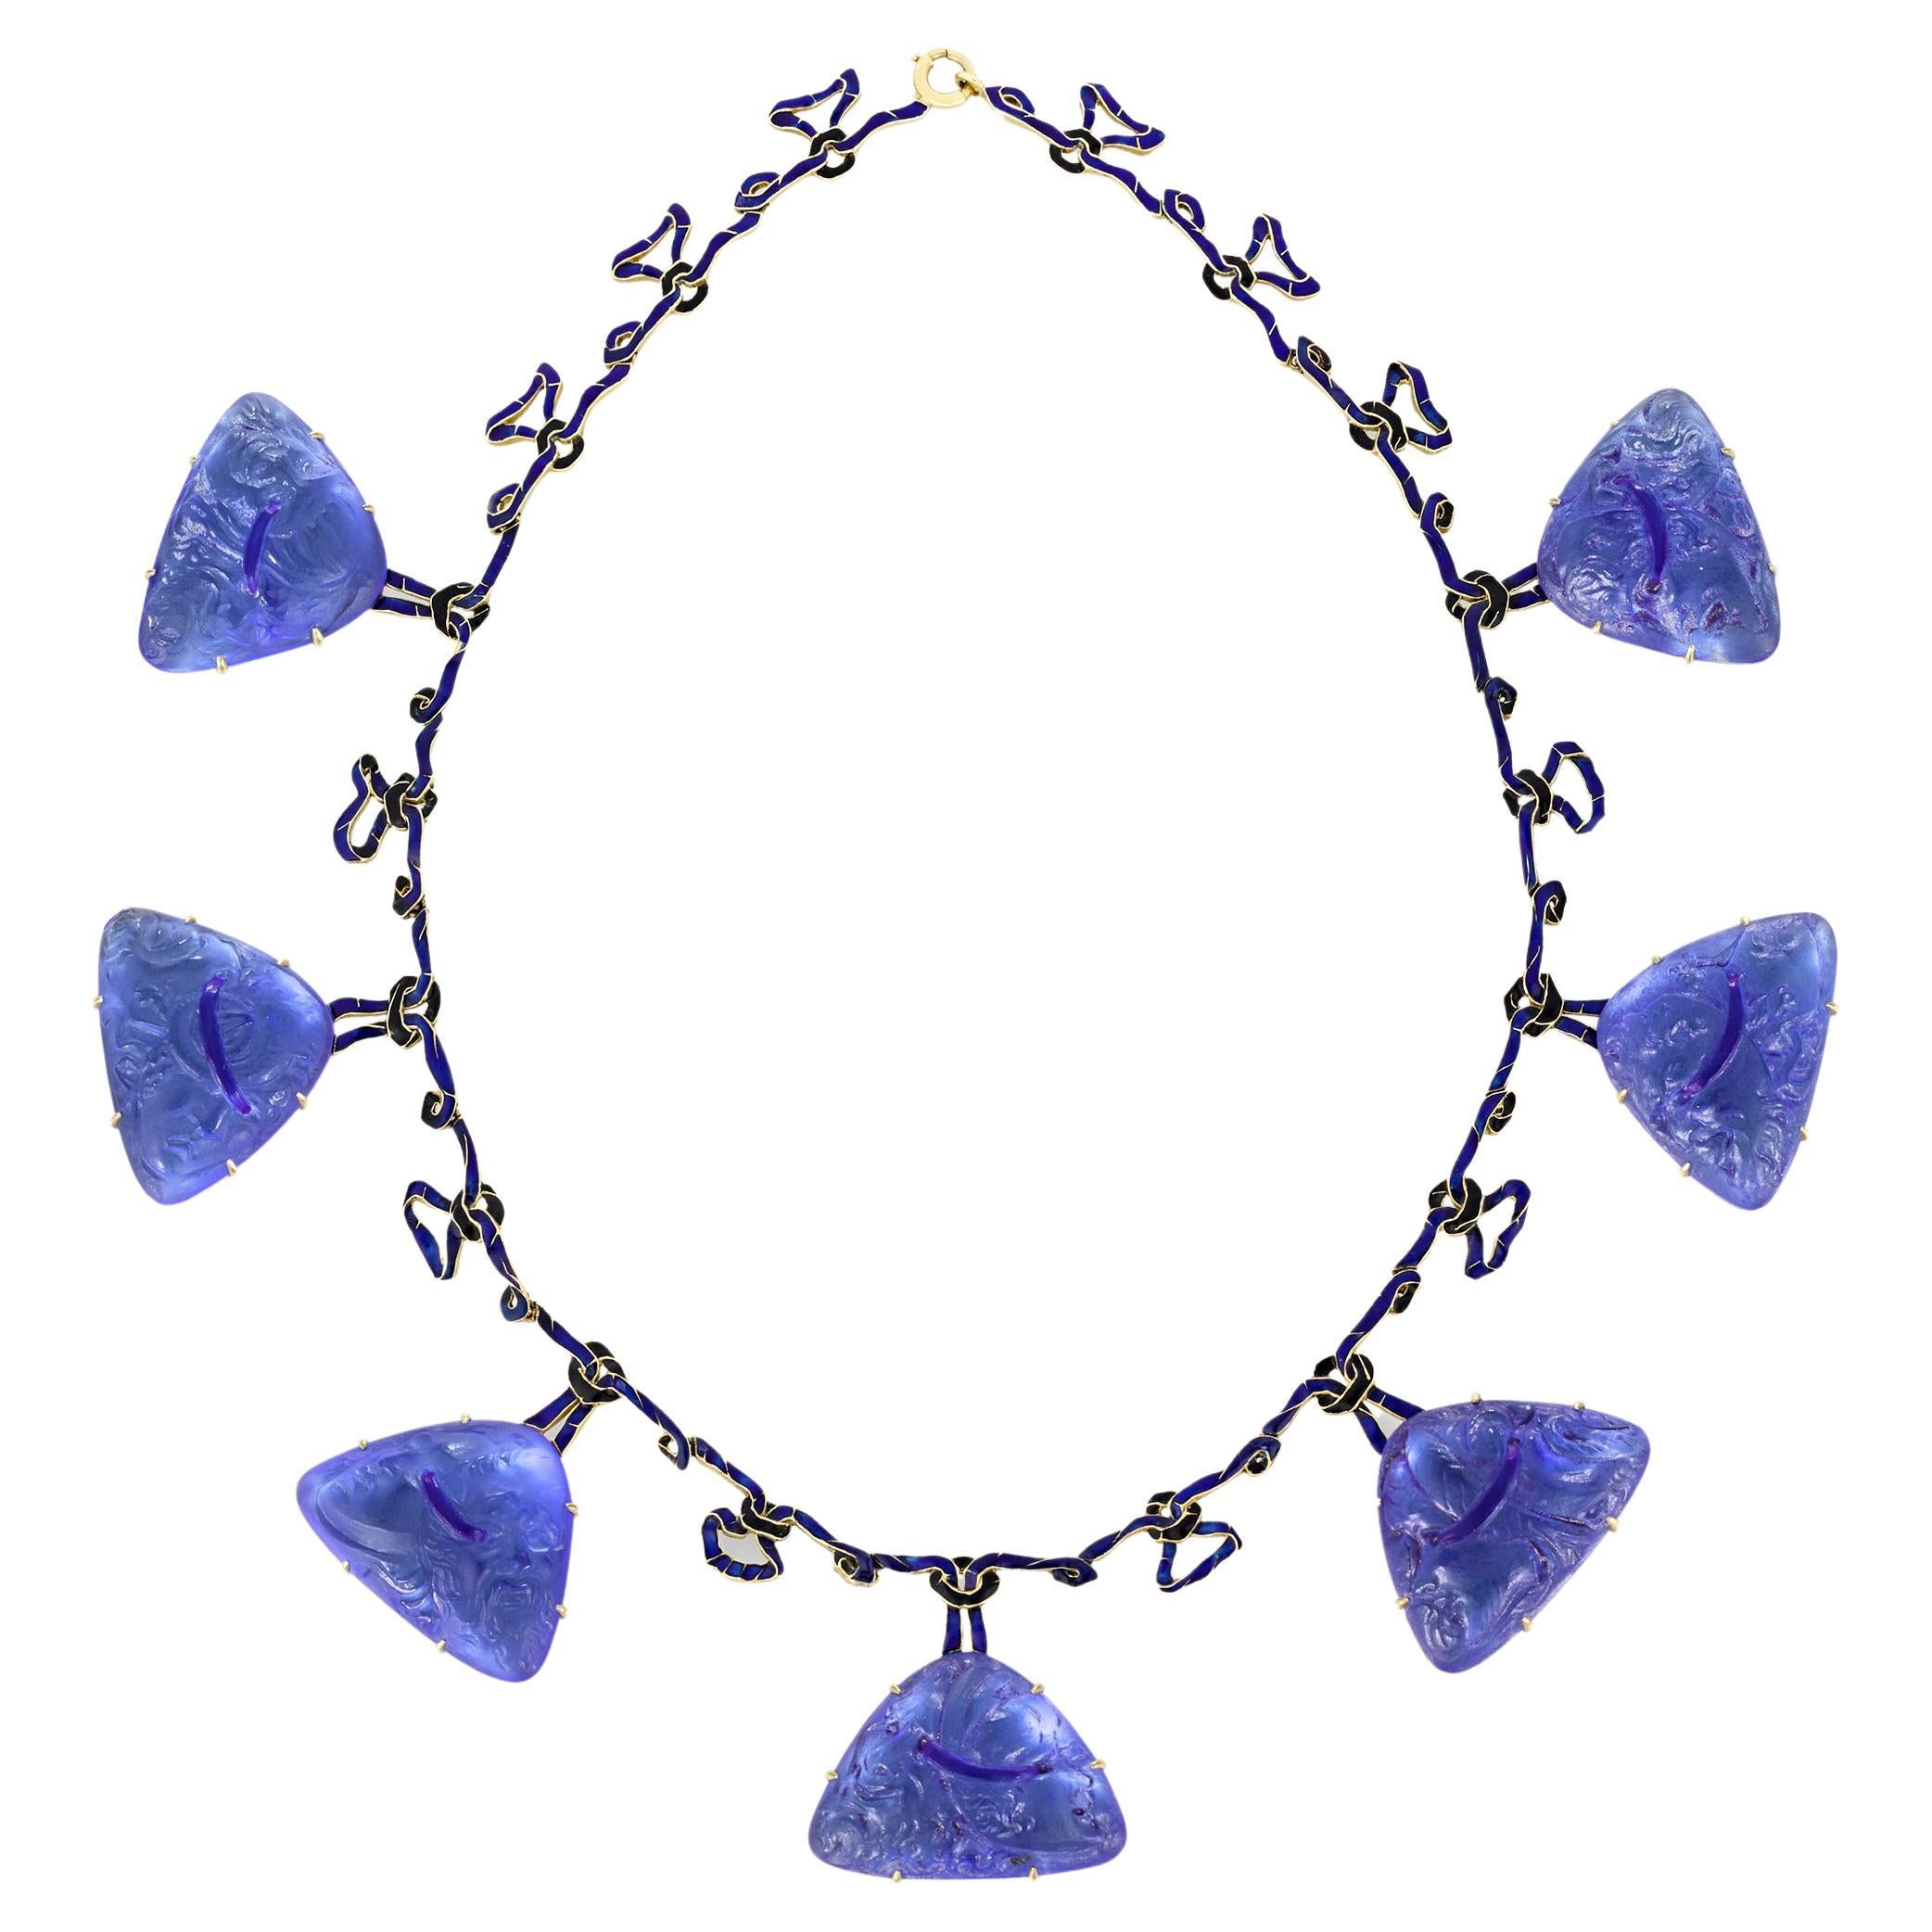 René Lalique Art Nouveau Glass and Enamel Necklace